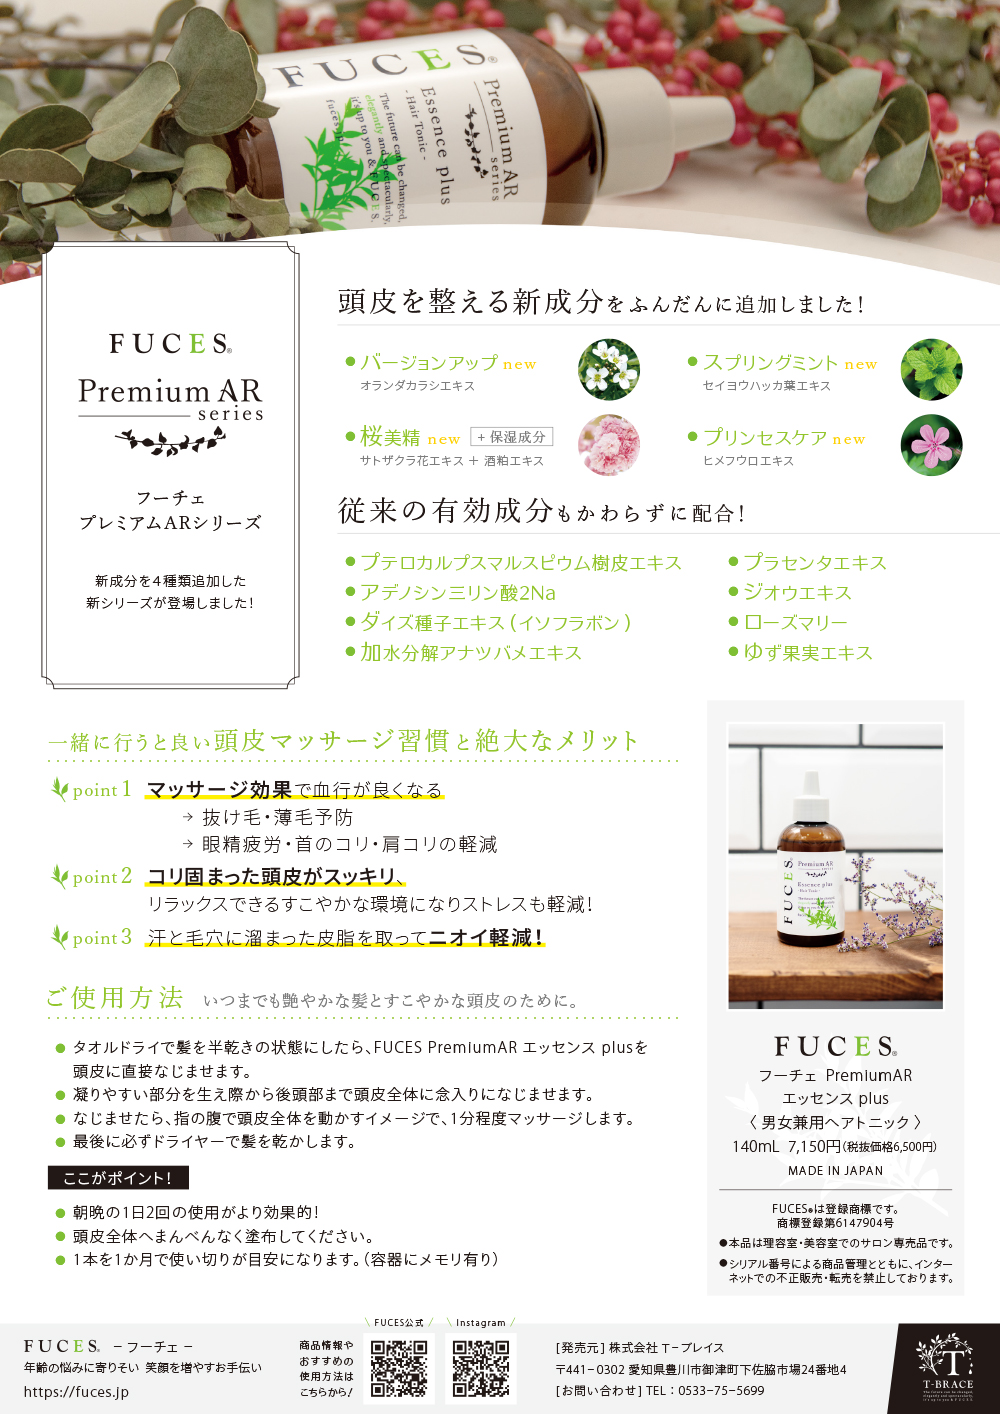 FUCES PremiumAR エッセンス Uprise A4店頭POP